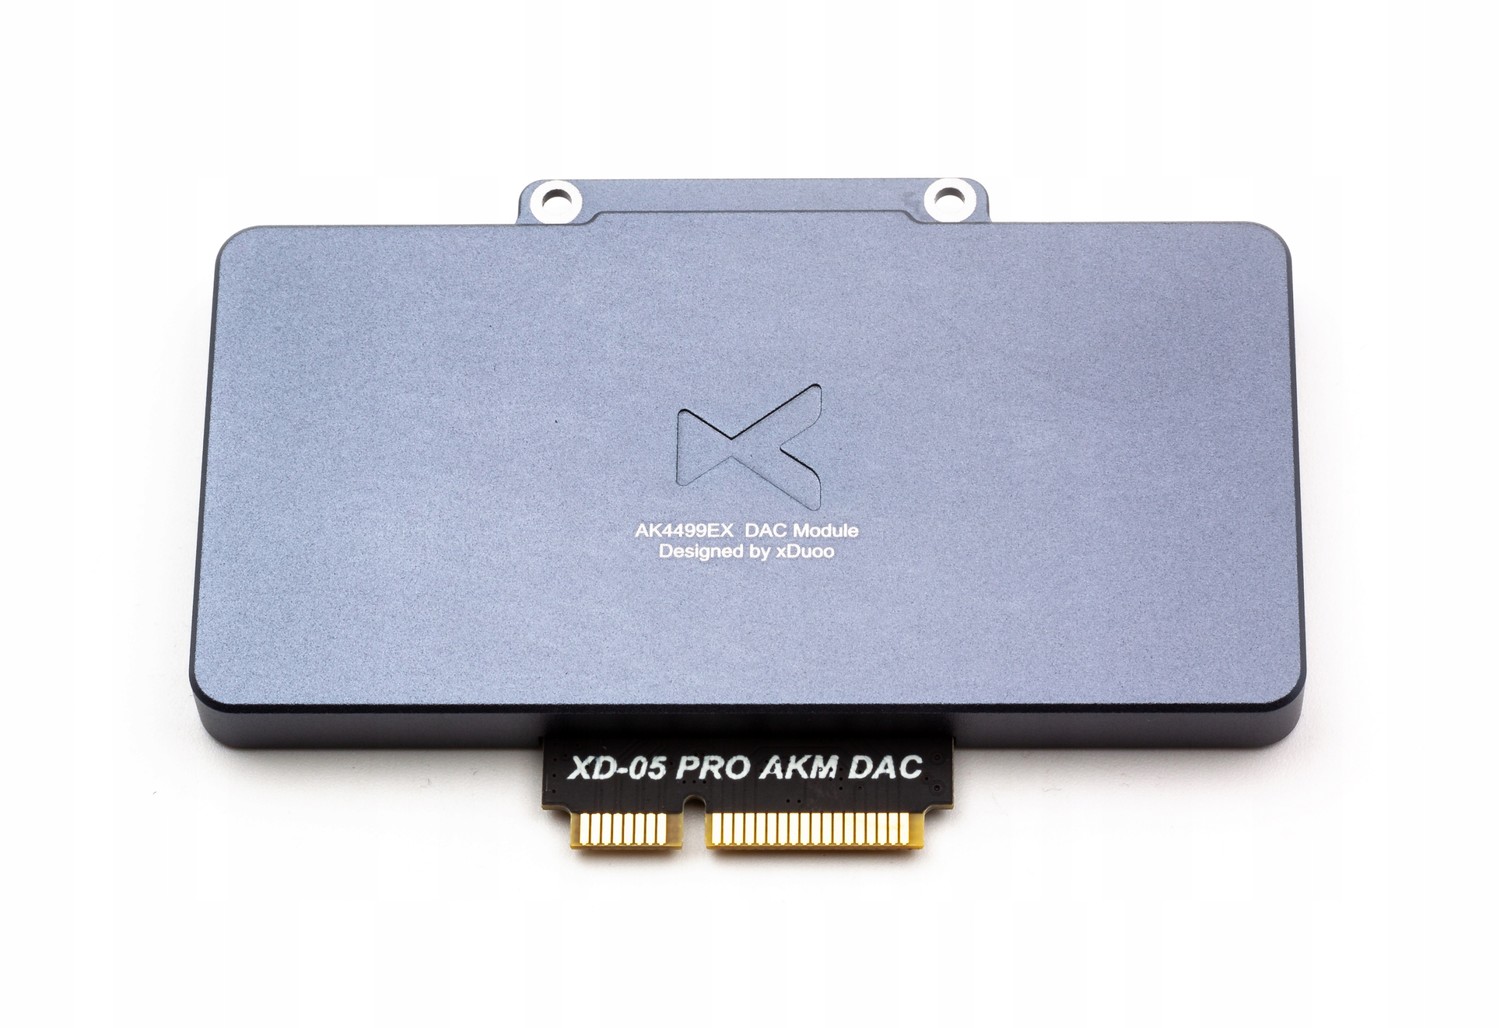 Náhradní Dac modul Akm AK4499EX určený pro xDuoo XD05 Pro